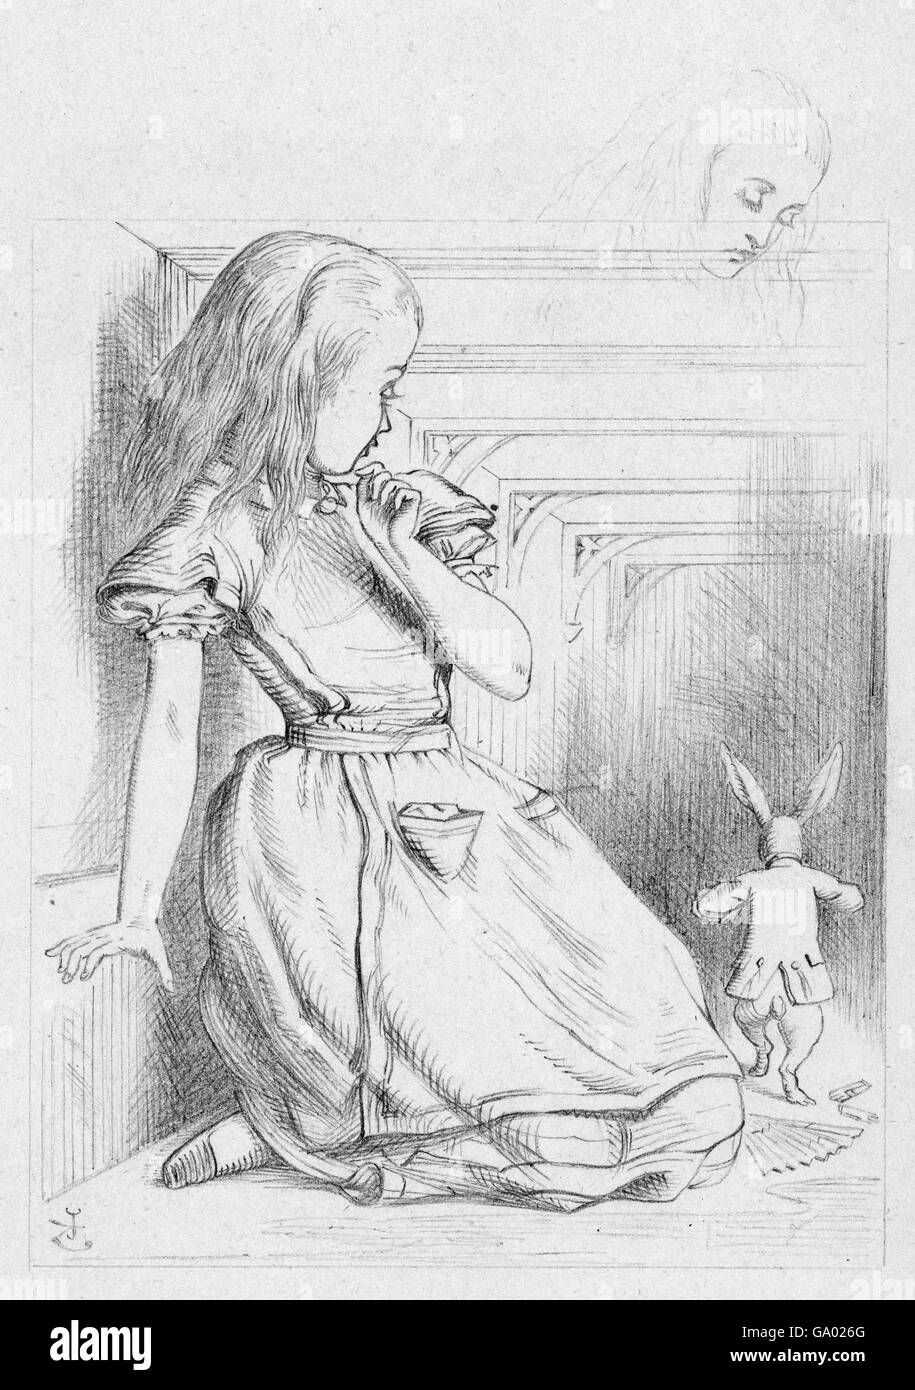 Alice en el país de las maravillas. 'El Conejo se ha escurriado', una ilustración de Sir John Tenniel para la 'Alice in Wonderland' de Lewis Carroll que muestra a Alice y el Conejo Blanco. Dibujo a lápiz sobre papel, c.1866. Foto de stock